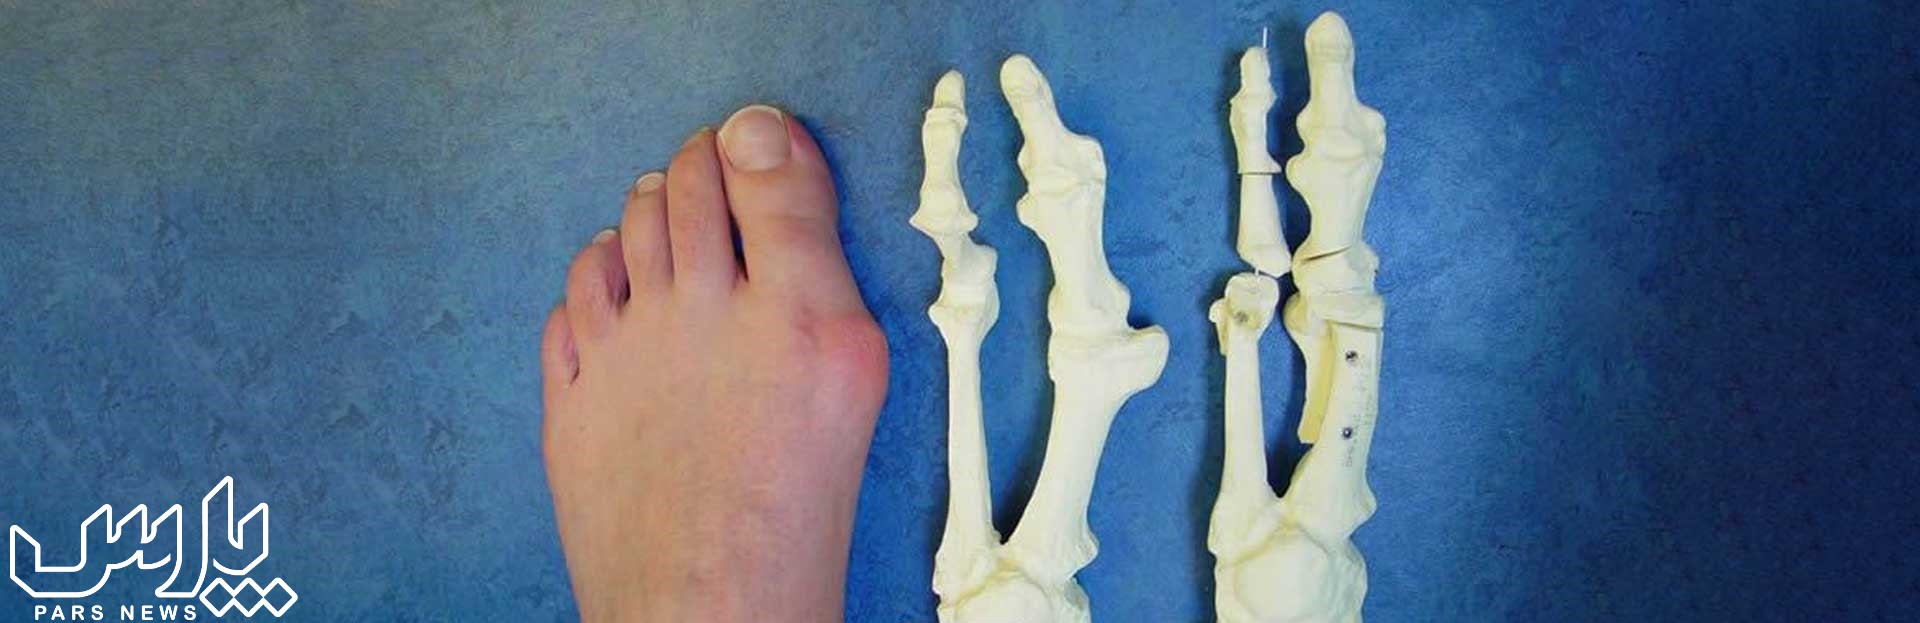 شگستگی استخوان - عوارض پوشیدن کفش تنگ